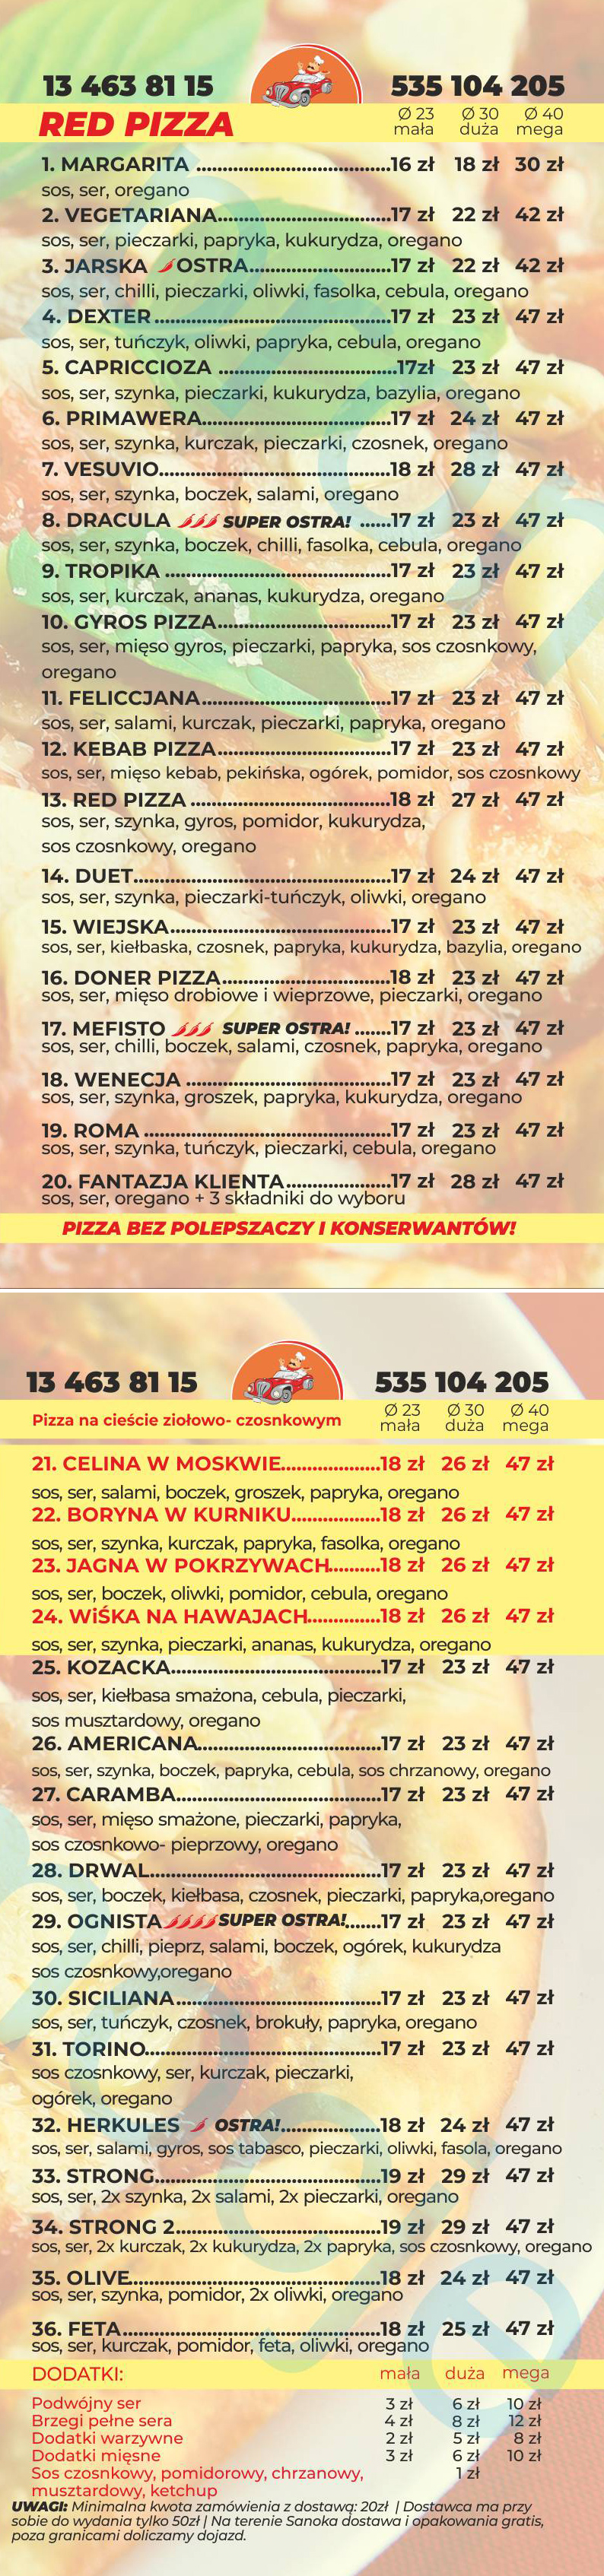 red-pizza-menu